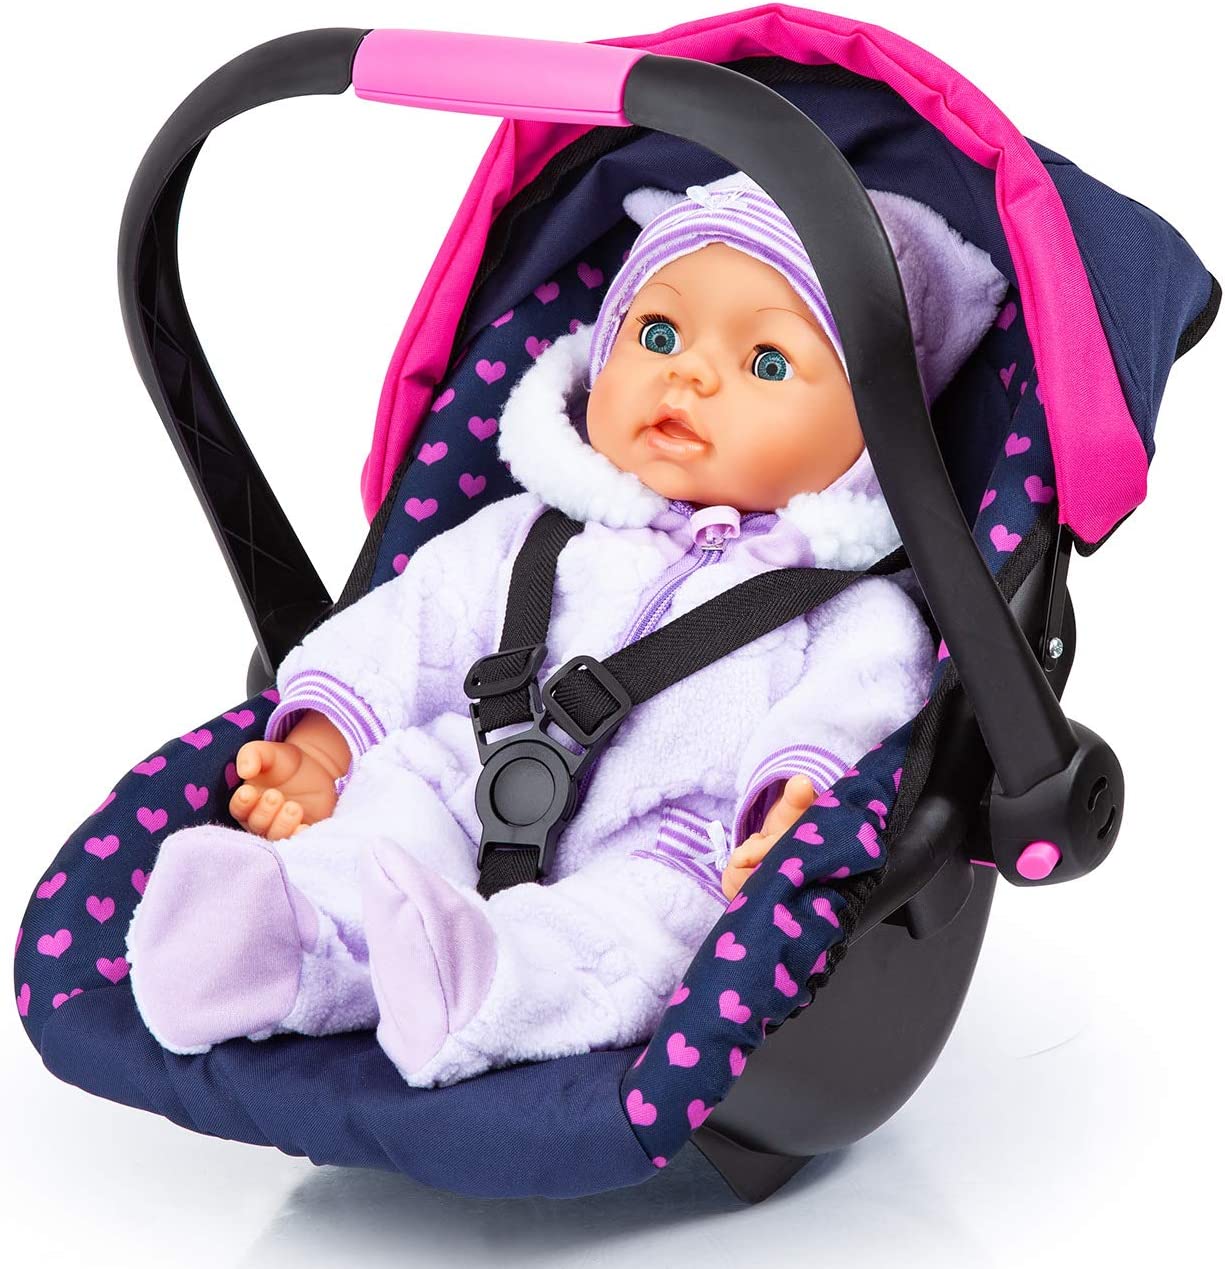 Accesorios para carros y sillas - Tiendas Babys